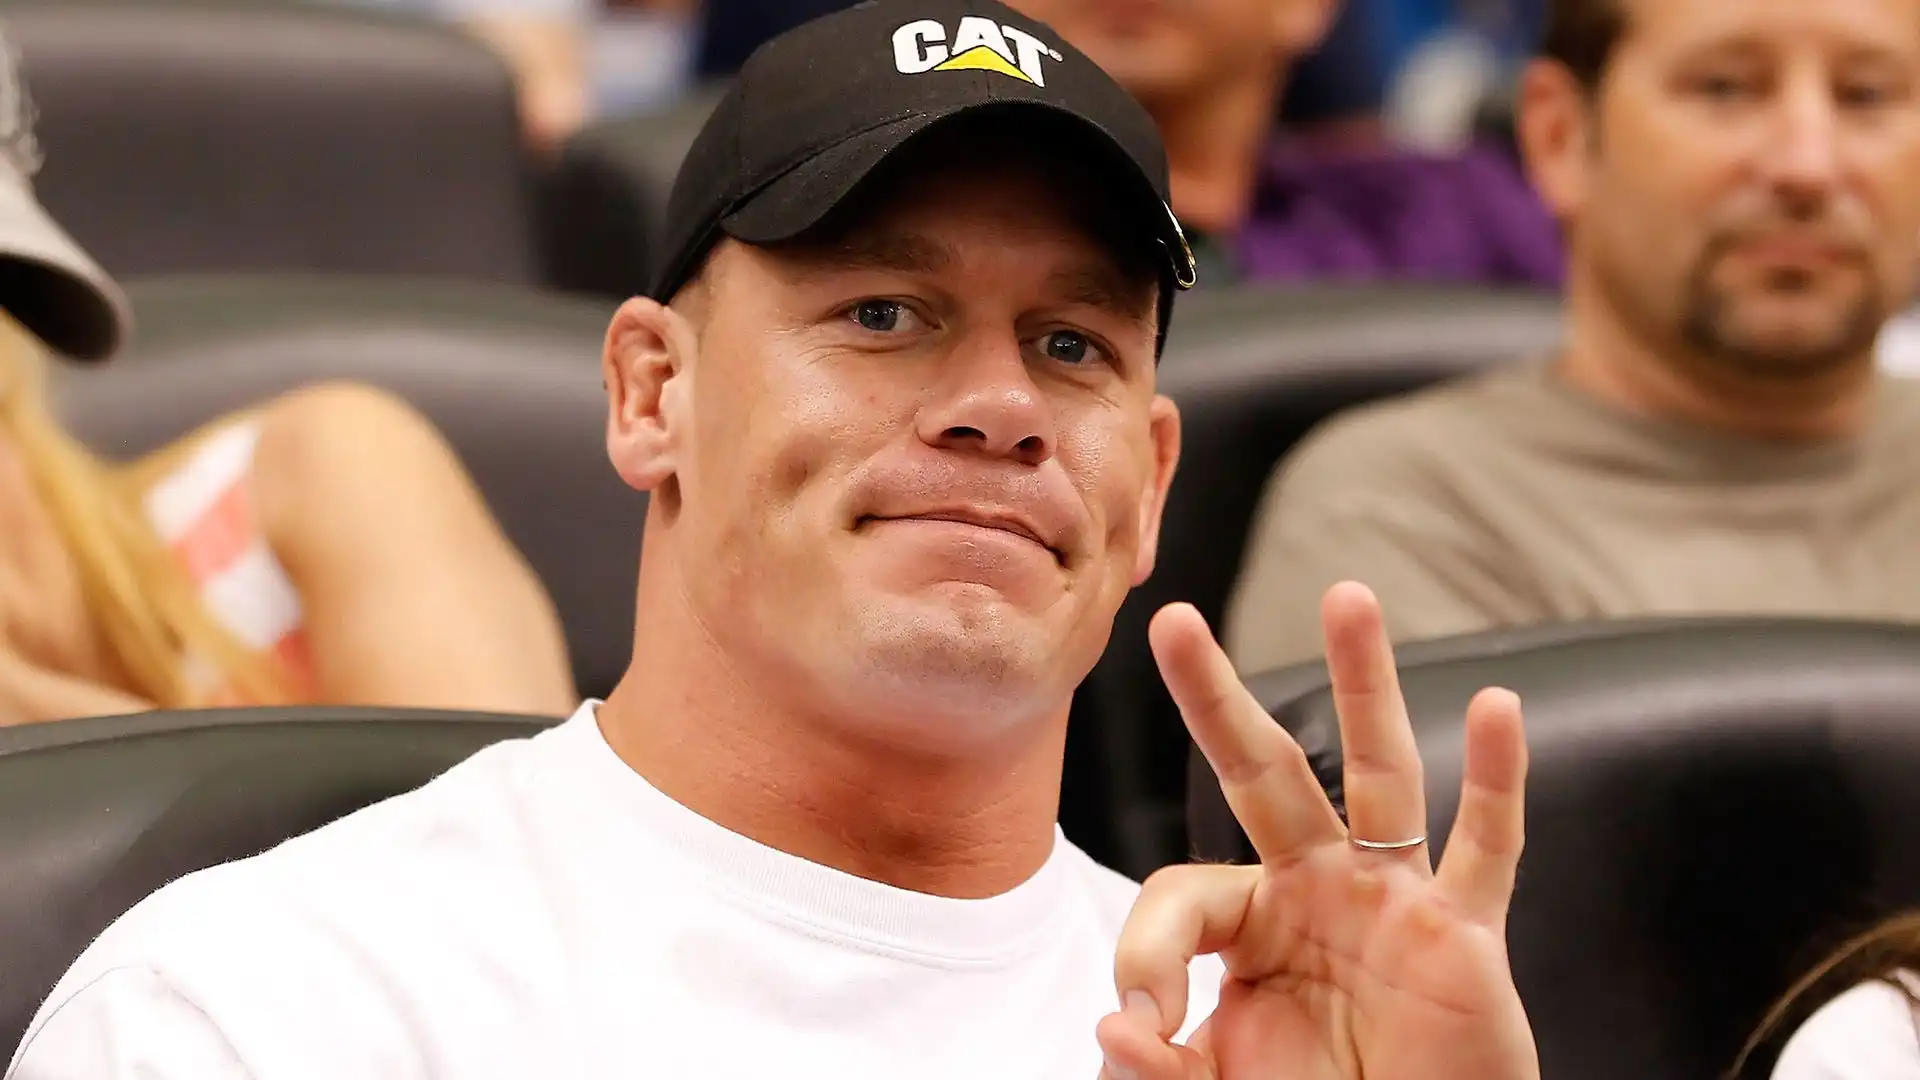 3 John Cena: patrimonio netto 80 milioni di dollari. Per anni il wrestler di riferimento della WWE, è stato 16 volte campione del mondo. Ha intrapreso una carriera di successo come attore